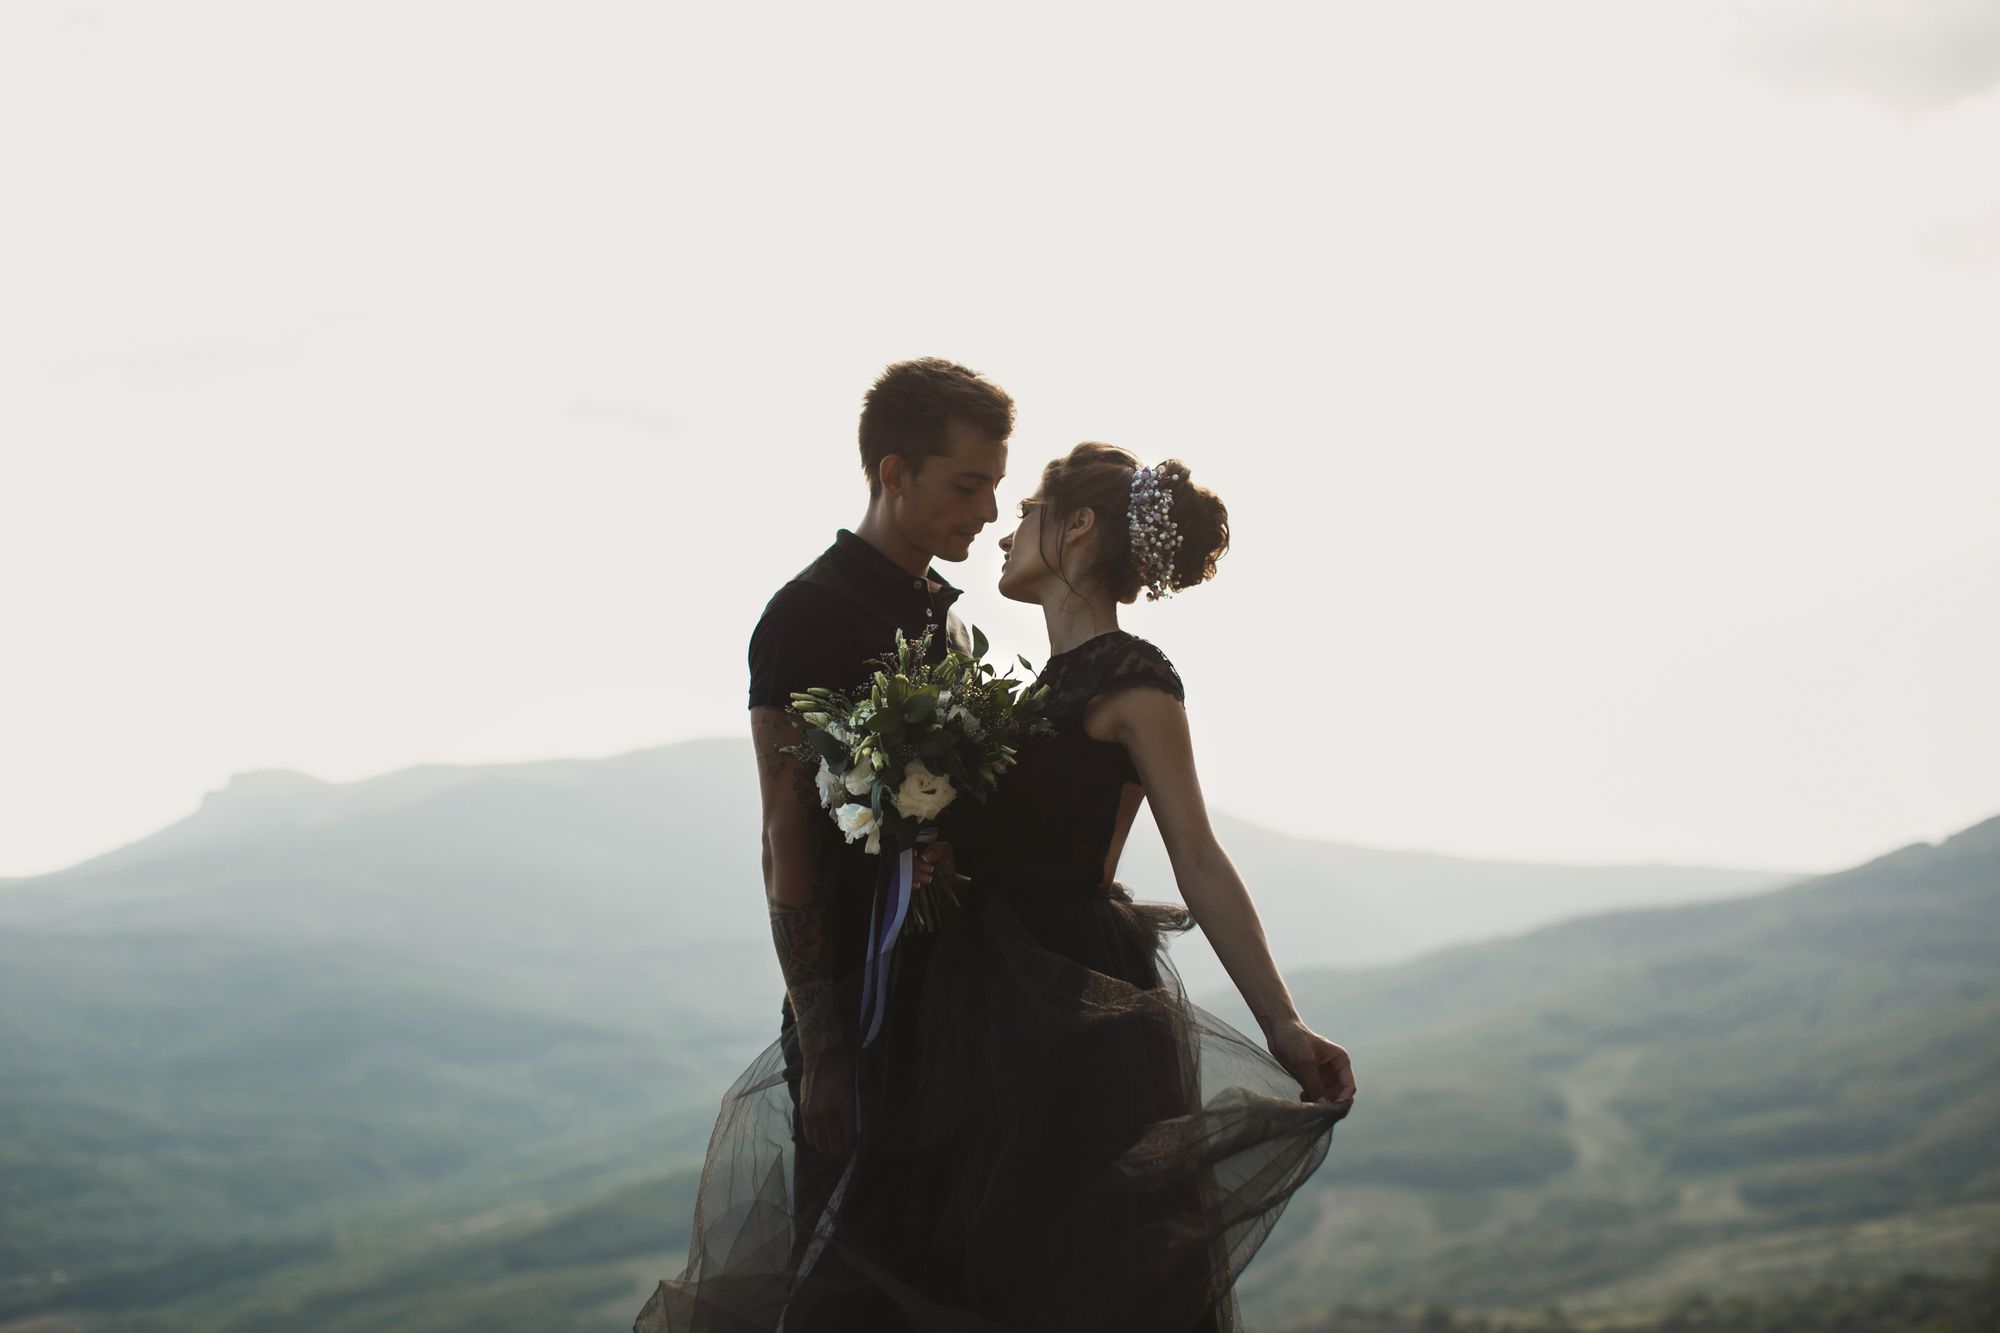 Brautpaar heiratet komplett in schwarz gekleidet